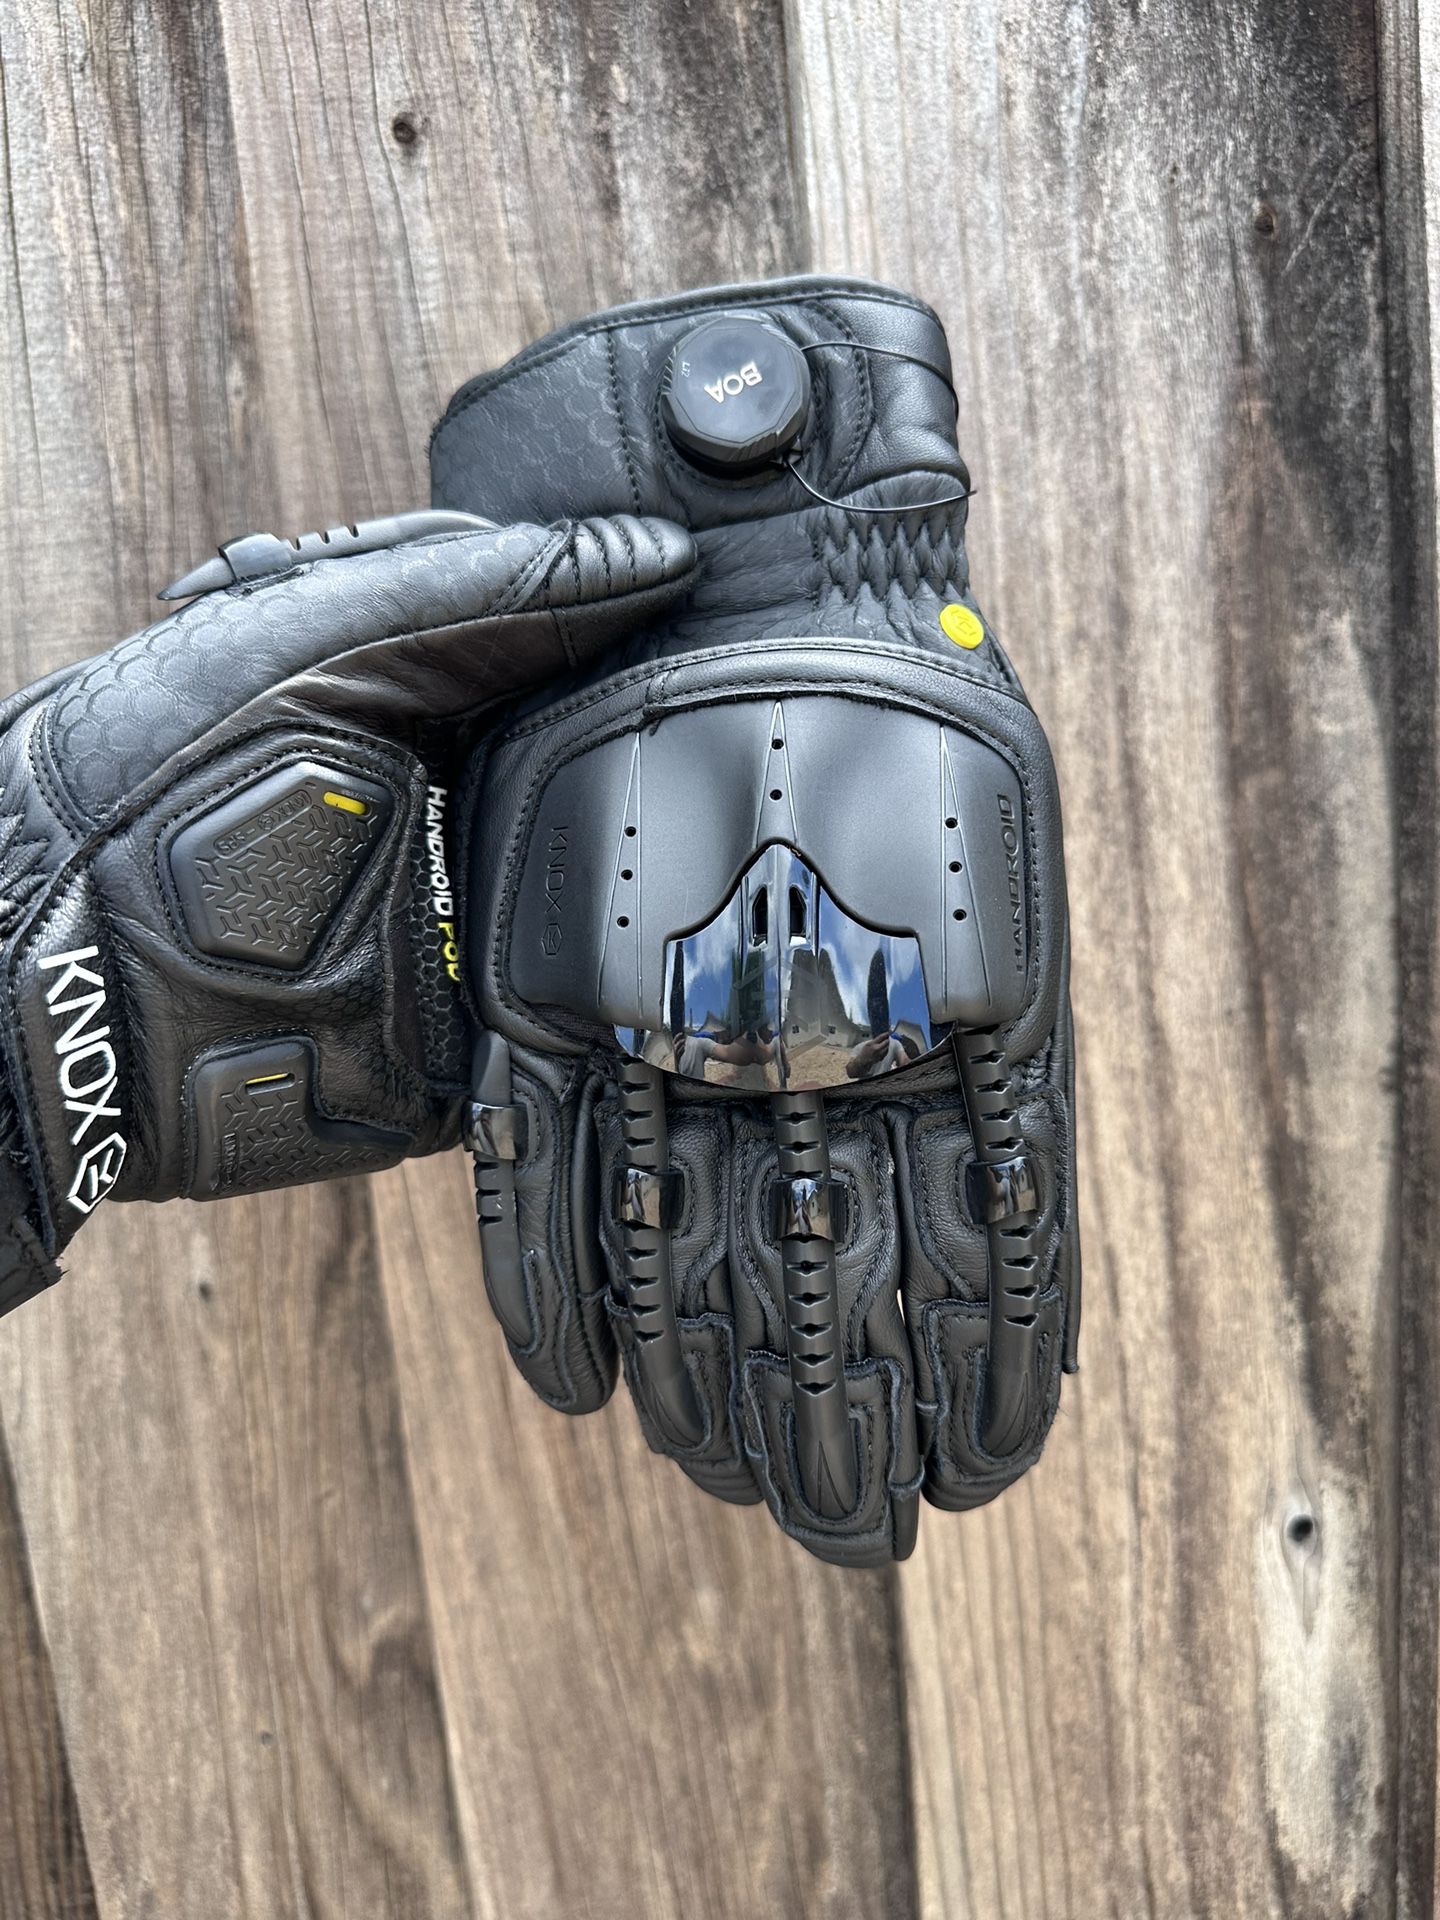 Knox Handroid Pod Mk5 Gloves